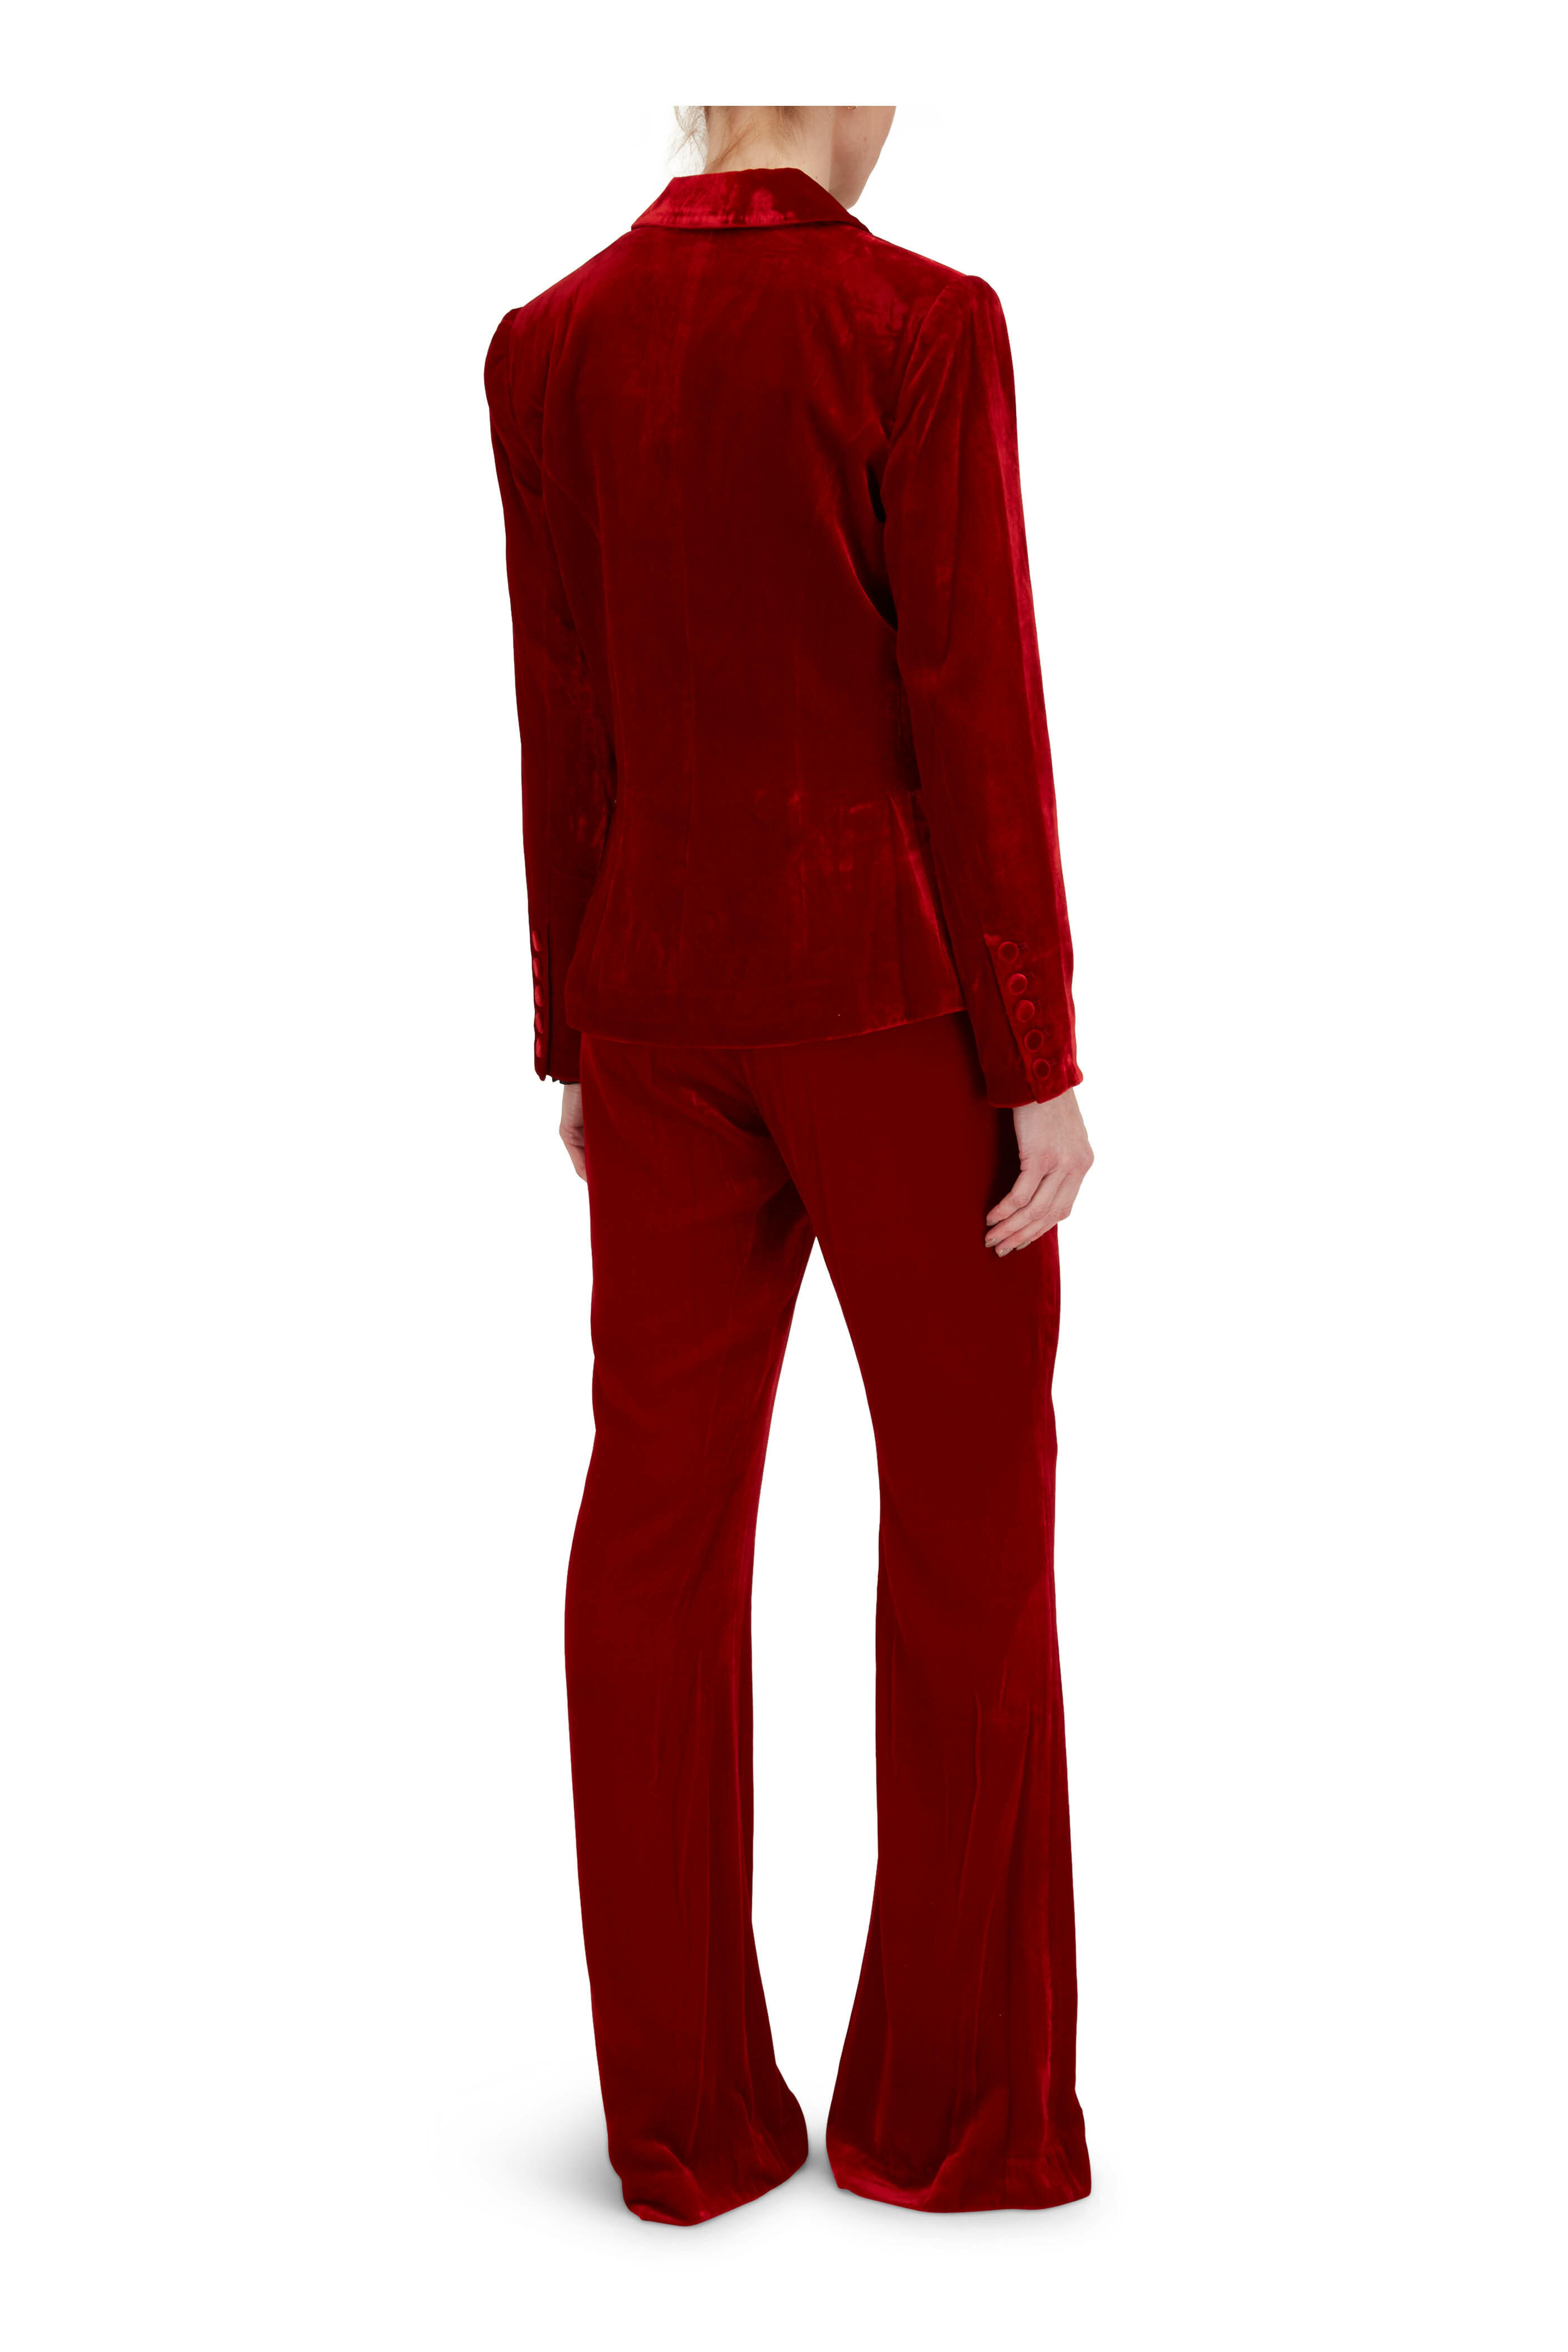 L'Agence - Lane Red Dahlia Printed Velvet Flare Pant